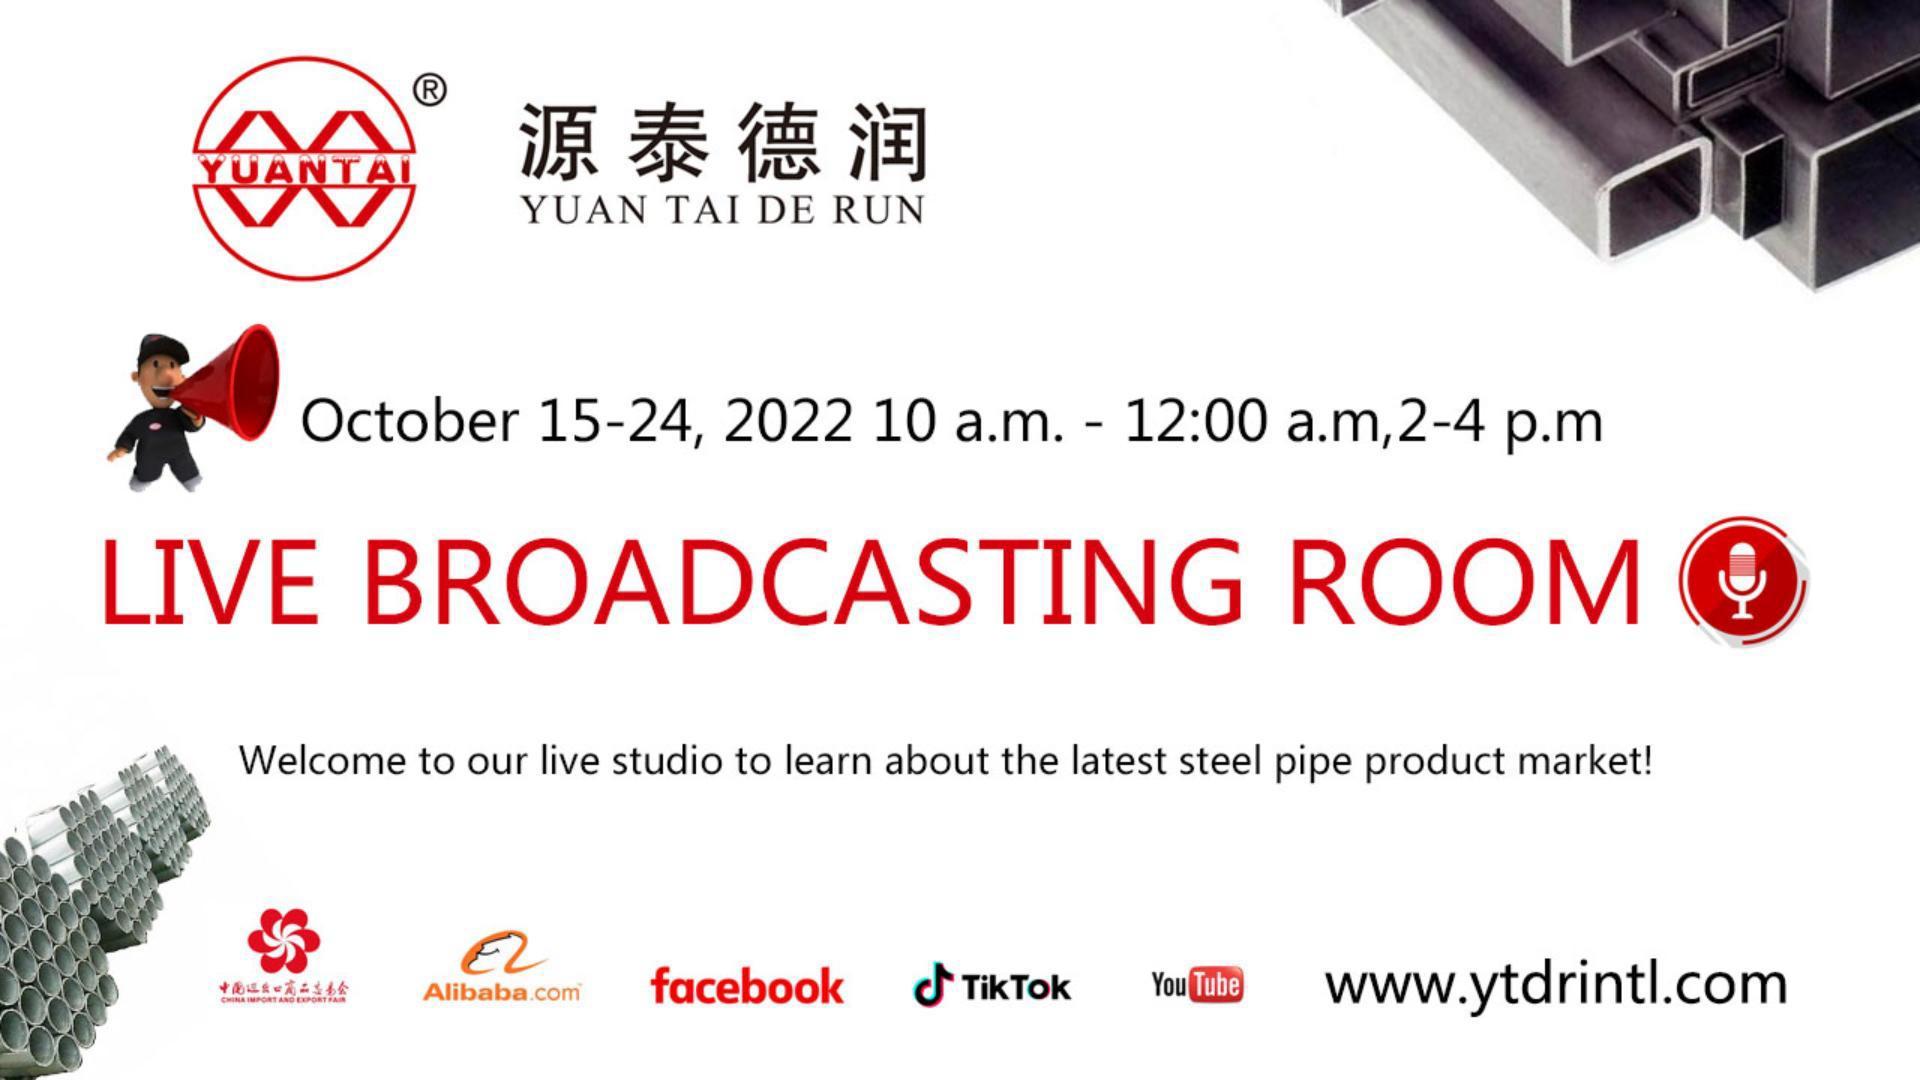 ¡Aviso! ¡Aviso! Tianjin yuantaiderun Steel Pipe Manufacturing Group participará en la 132ª Feria de Cantón del 15 al 24 de octubre de 2022.